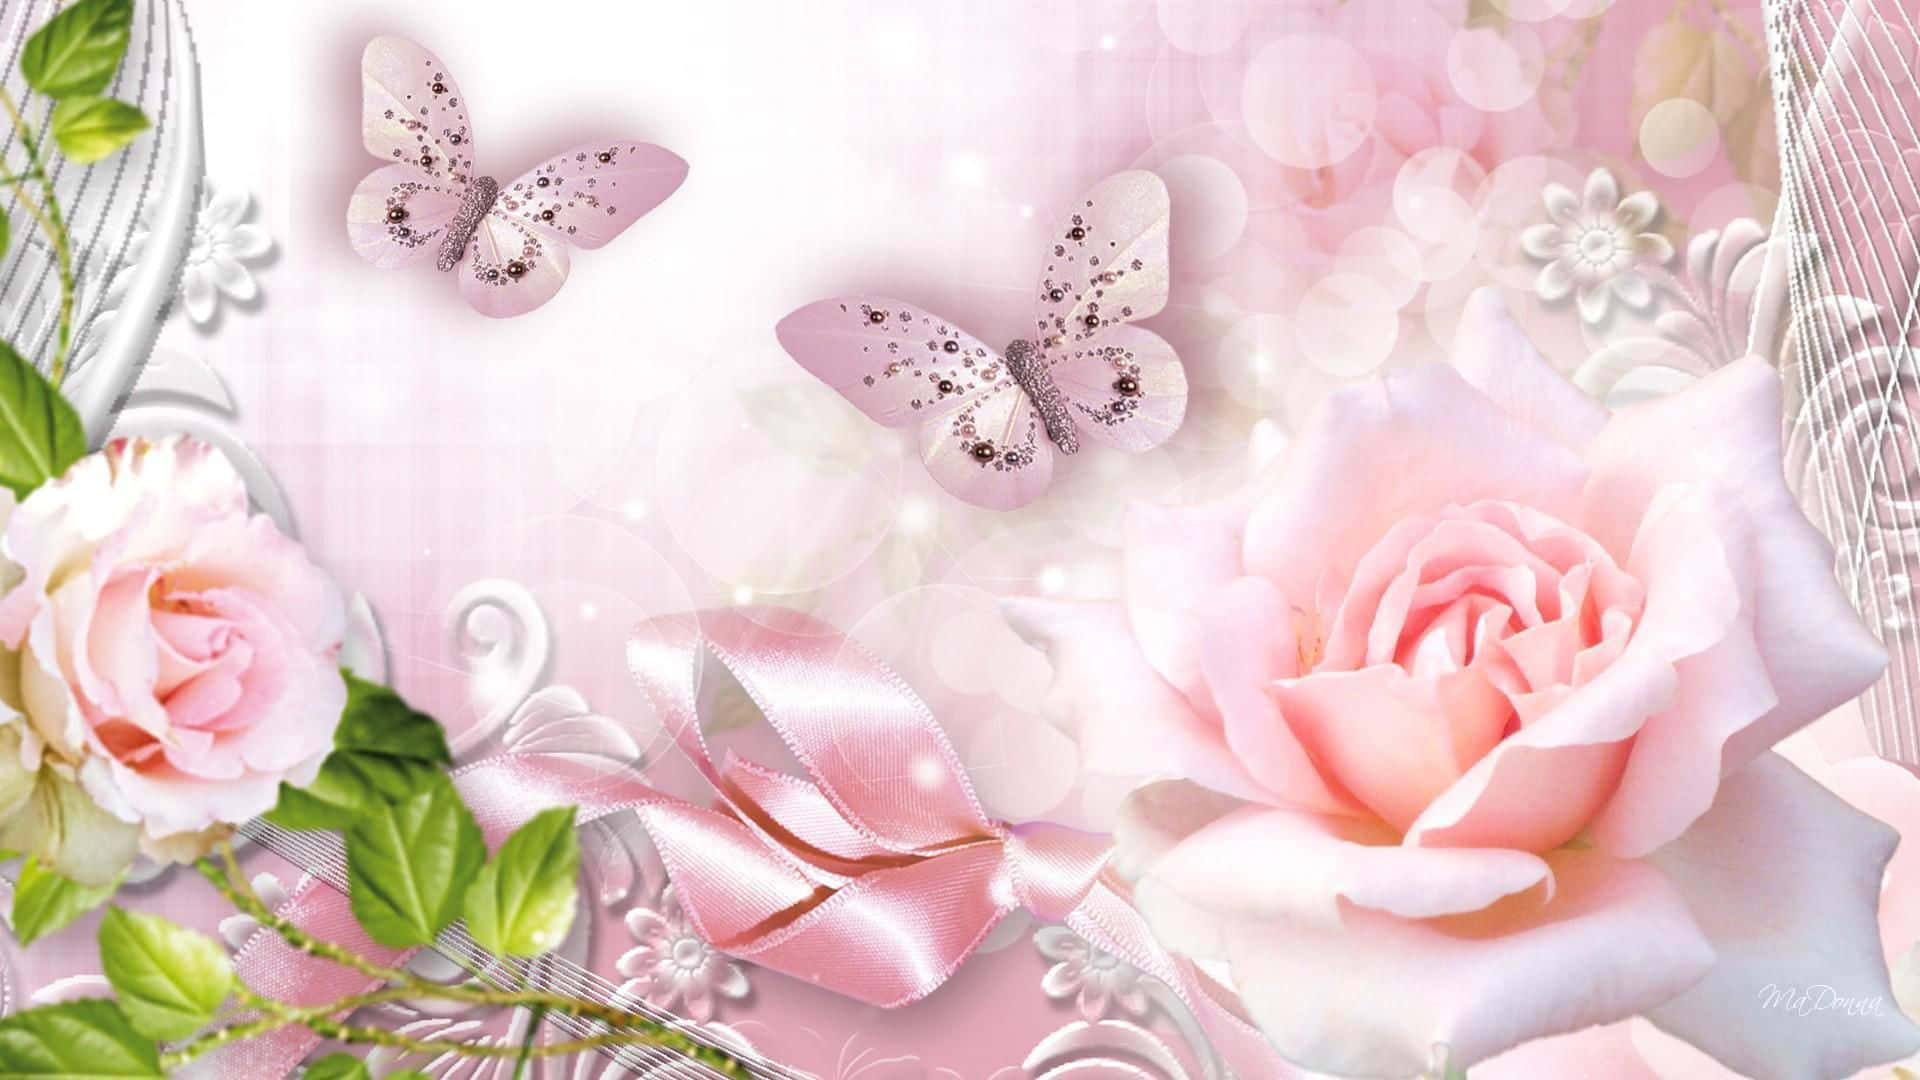 Dosmariposas Rosas De Purpurina Fondo de pantalla